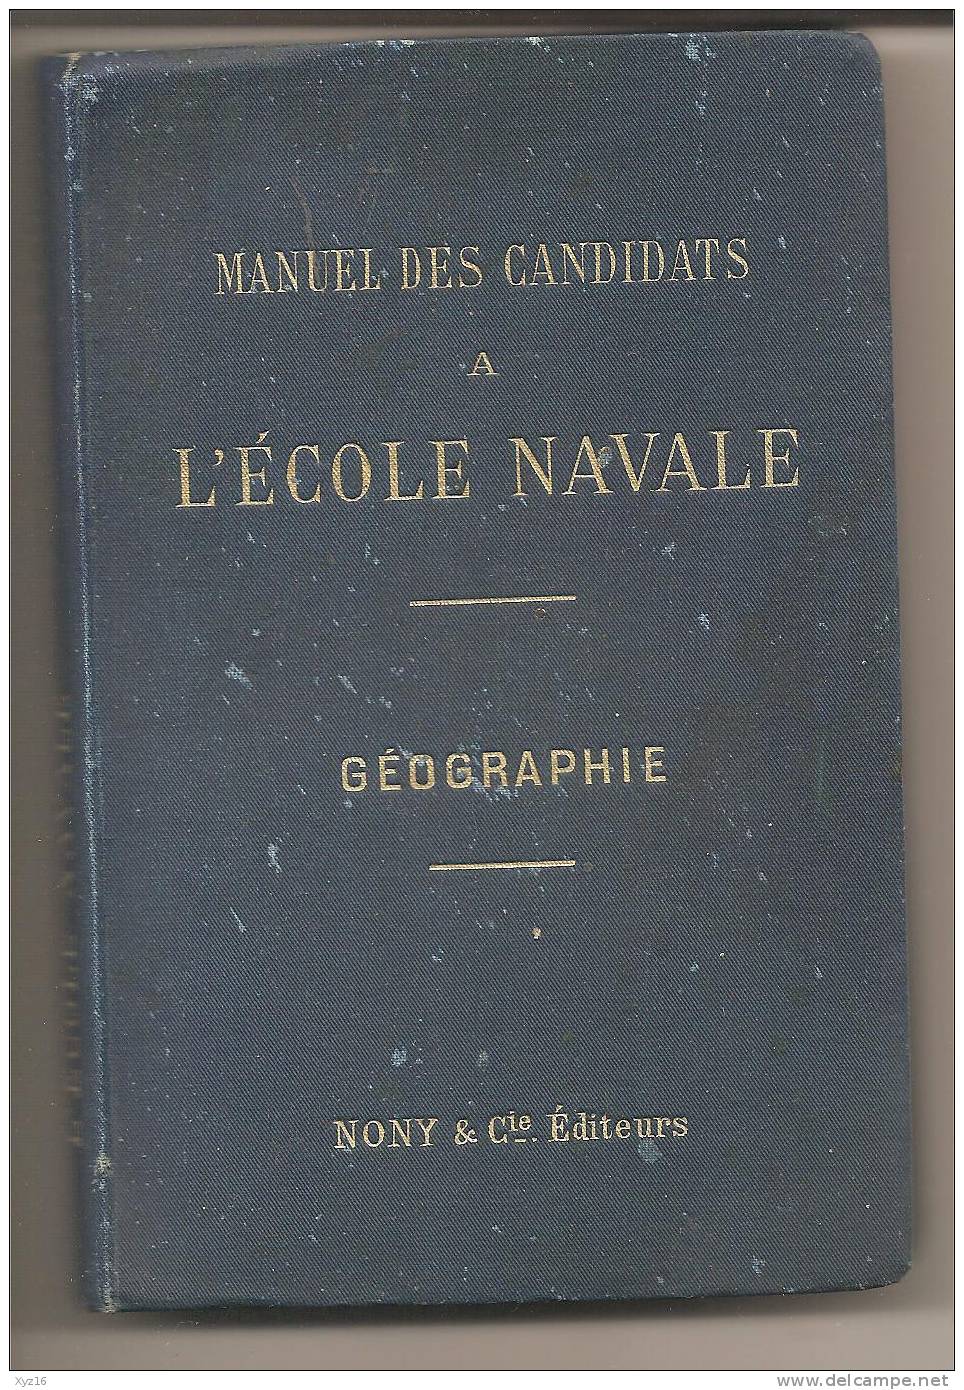 Mnuel Des Candidats A L'ECOLE NAVALE  Géographie 1901 NONY & Cie éditeurs - 18+ Years Old